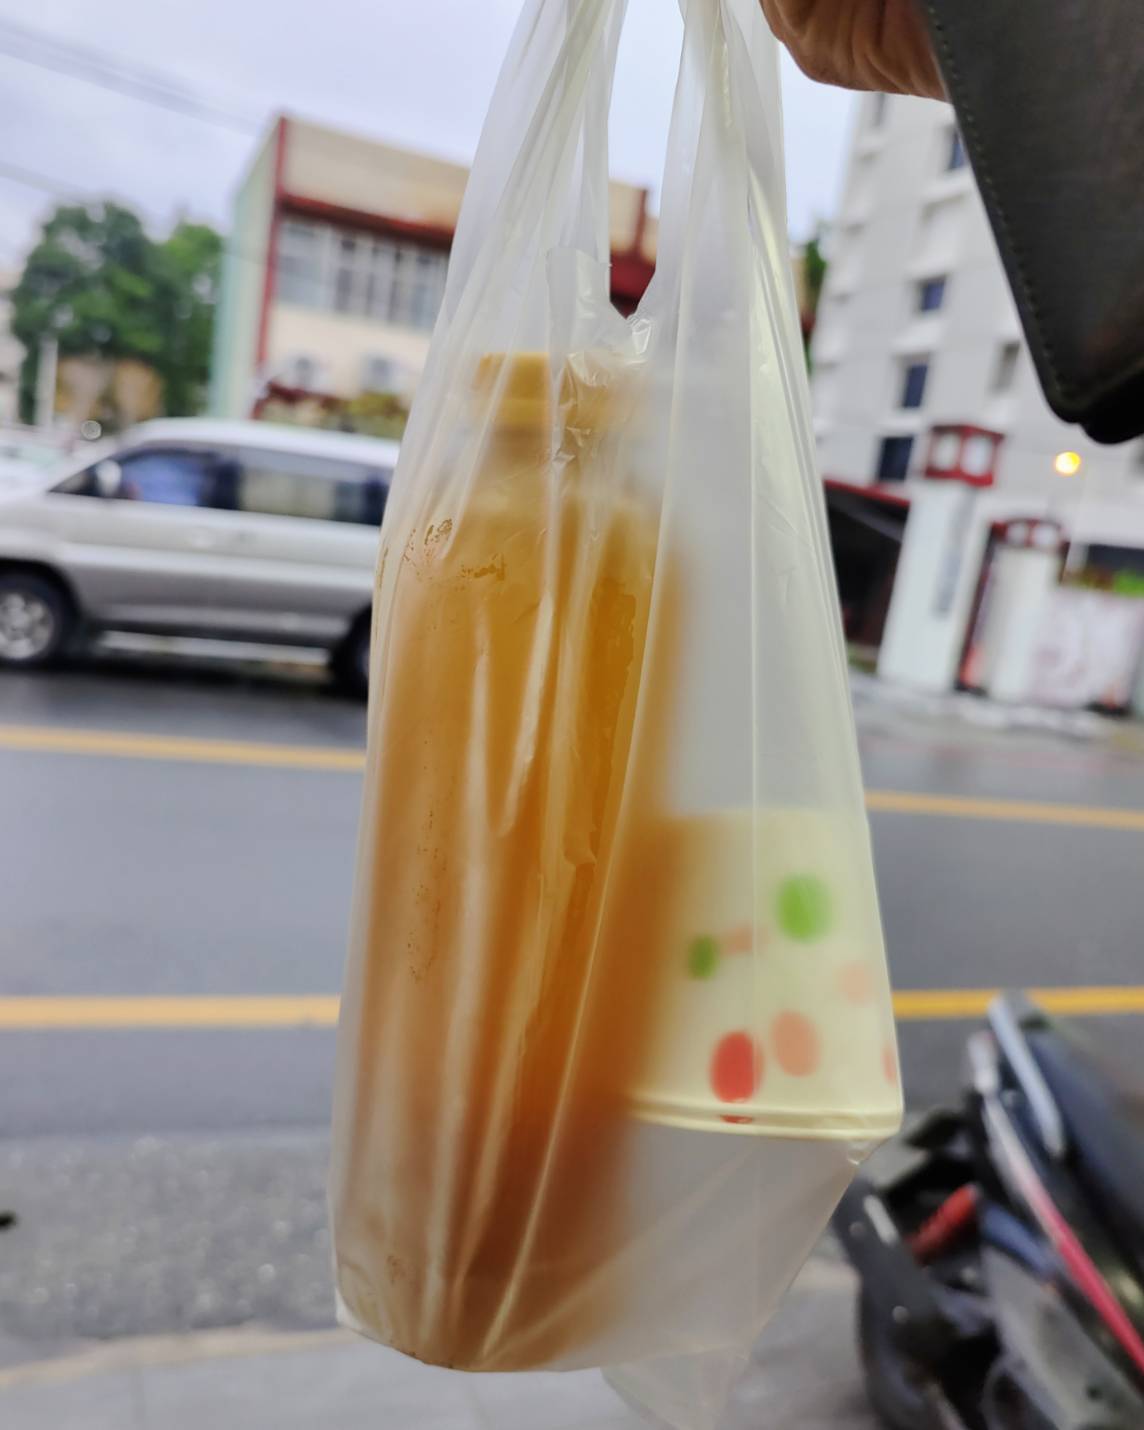 [花蓮飲料店]打手果汁Juice man-鳳梨果茶濃郁好喝